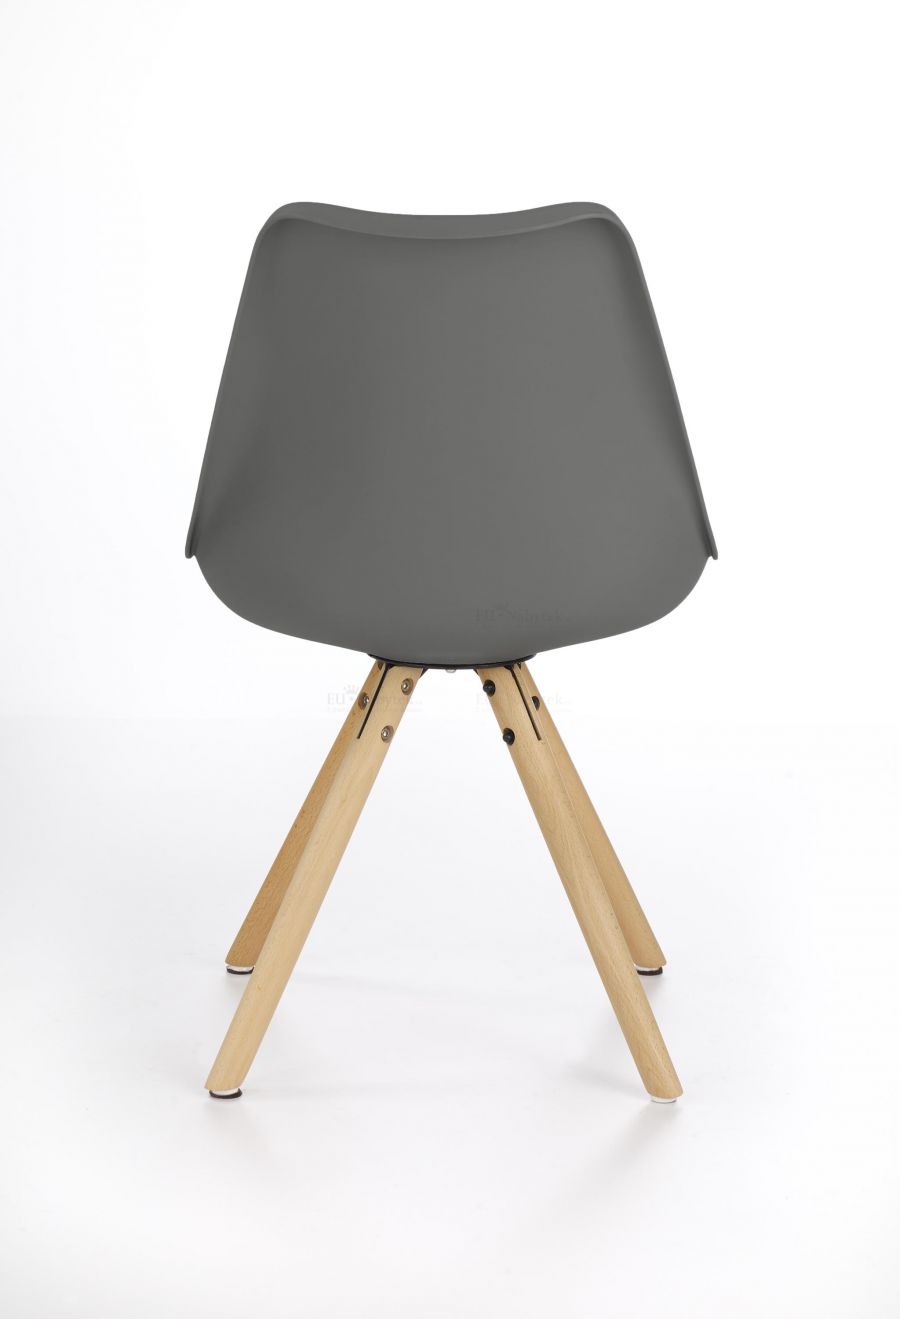 Jídelní židle K201 šedá